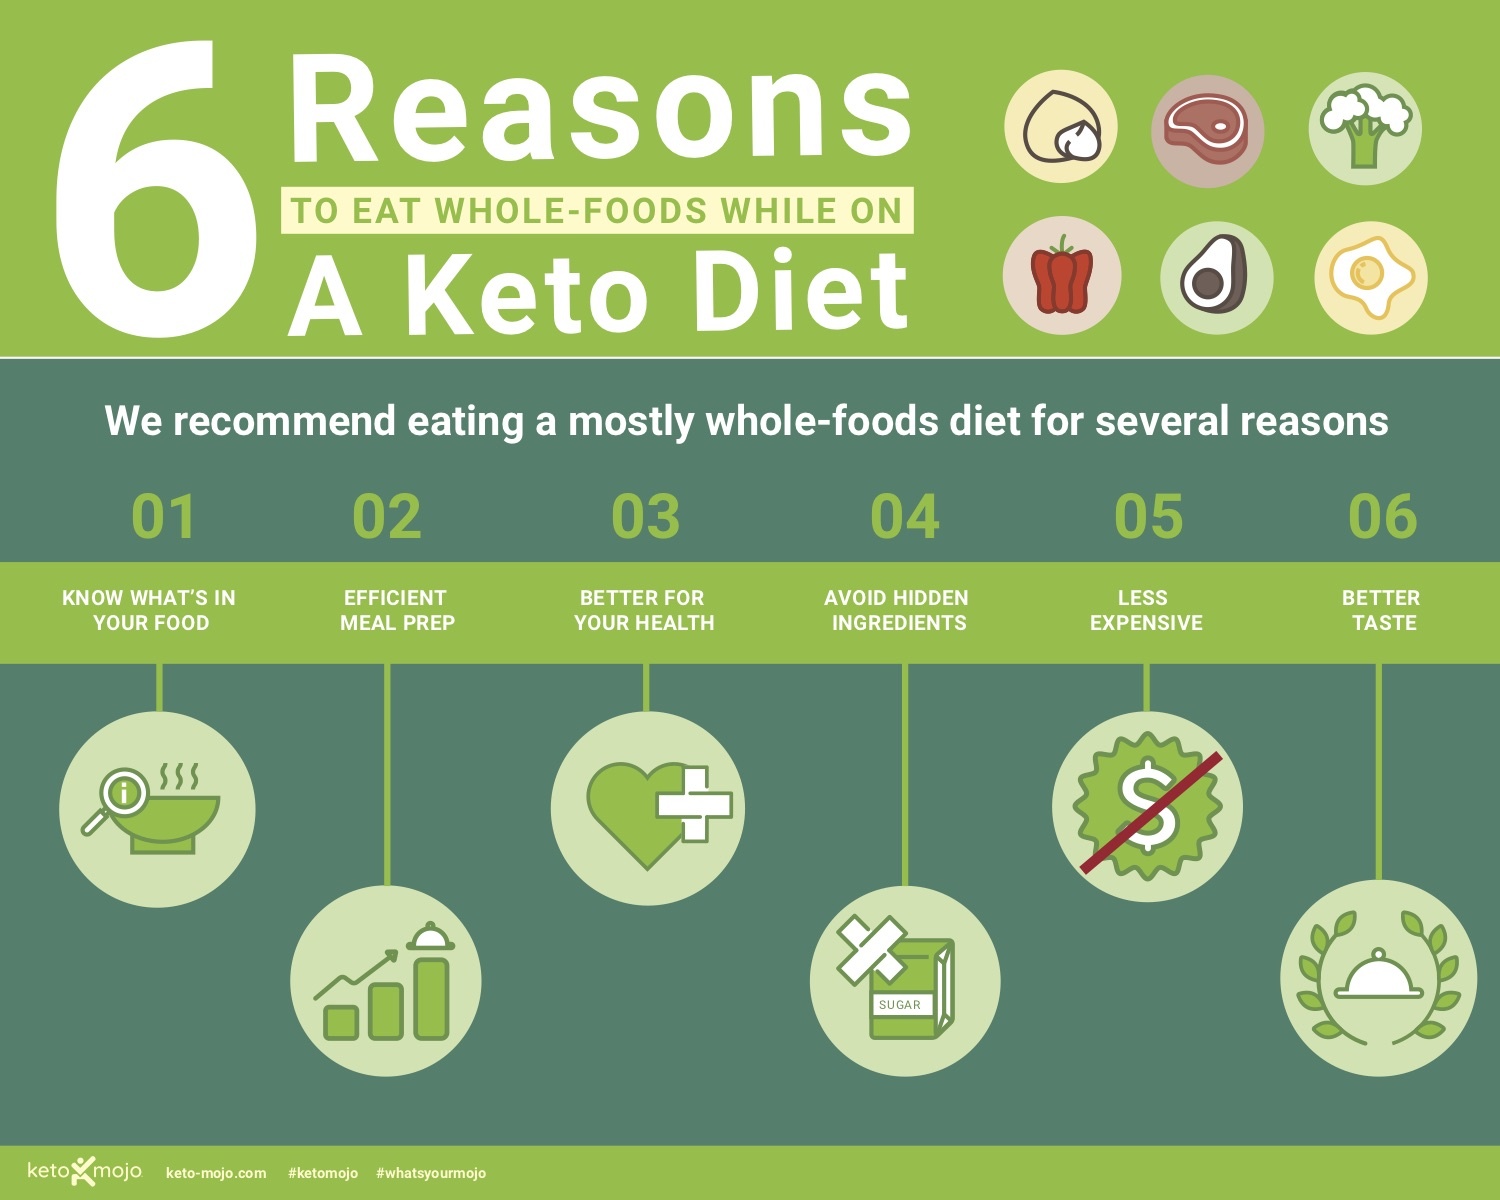 typical american diet versus keto diet